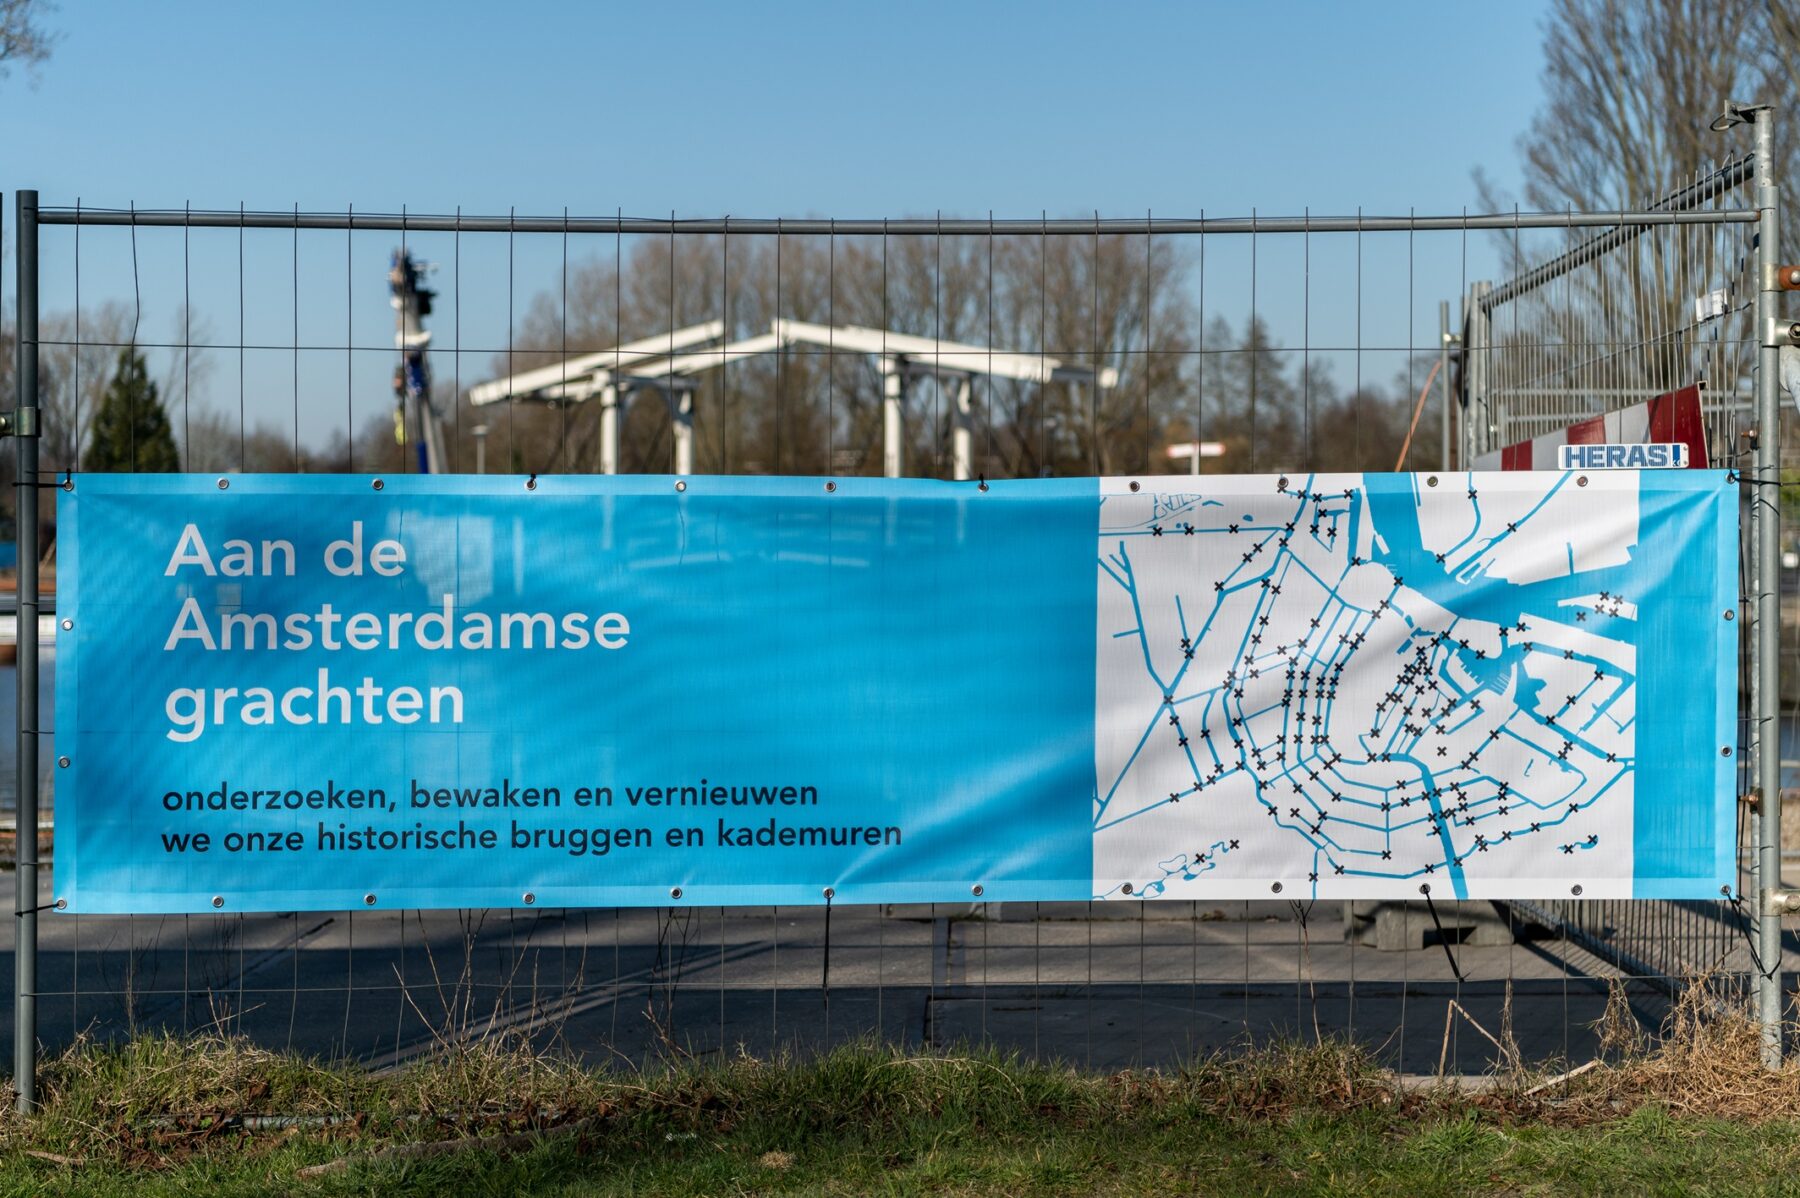 Doek met opschrift over de opdracht van Amsterdam om de historische kademuren te onderzoeken, bewaken en vernieuwen